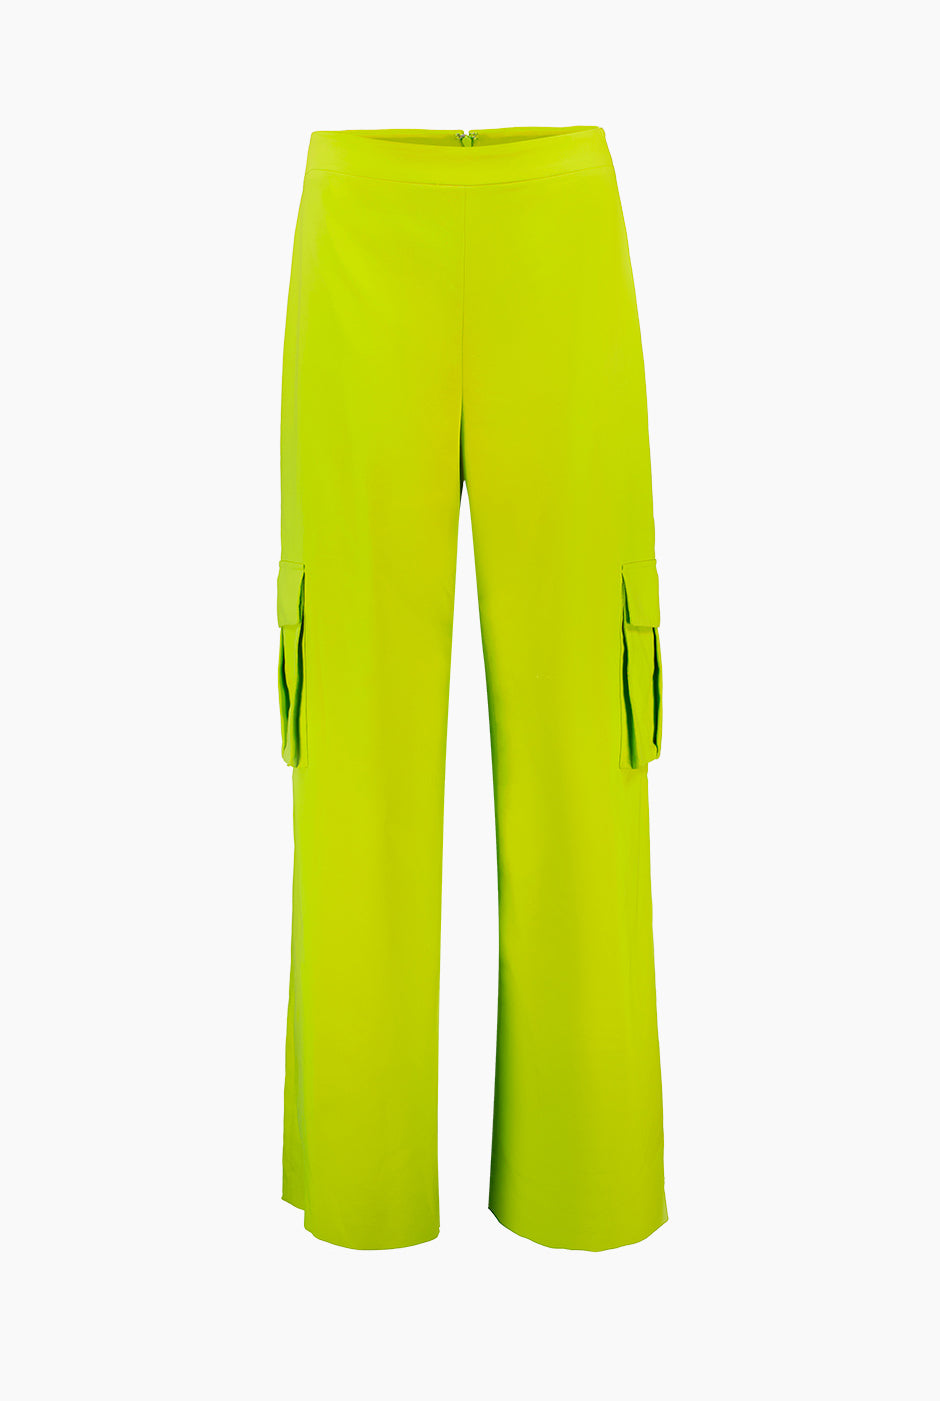 Pantalon cargo de talle alto color verde